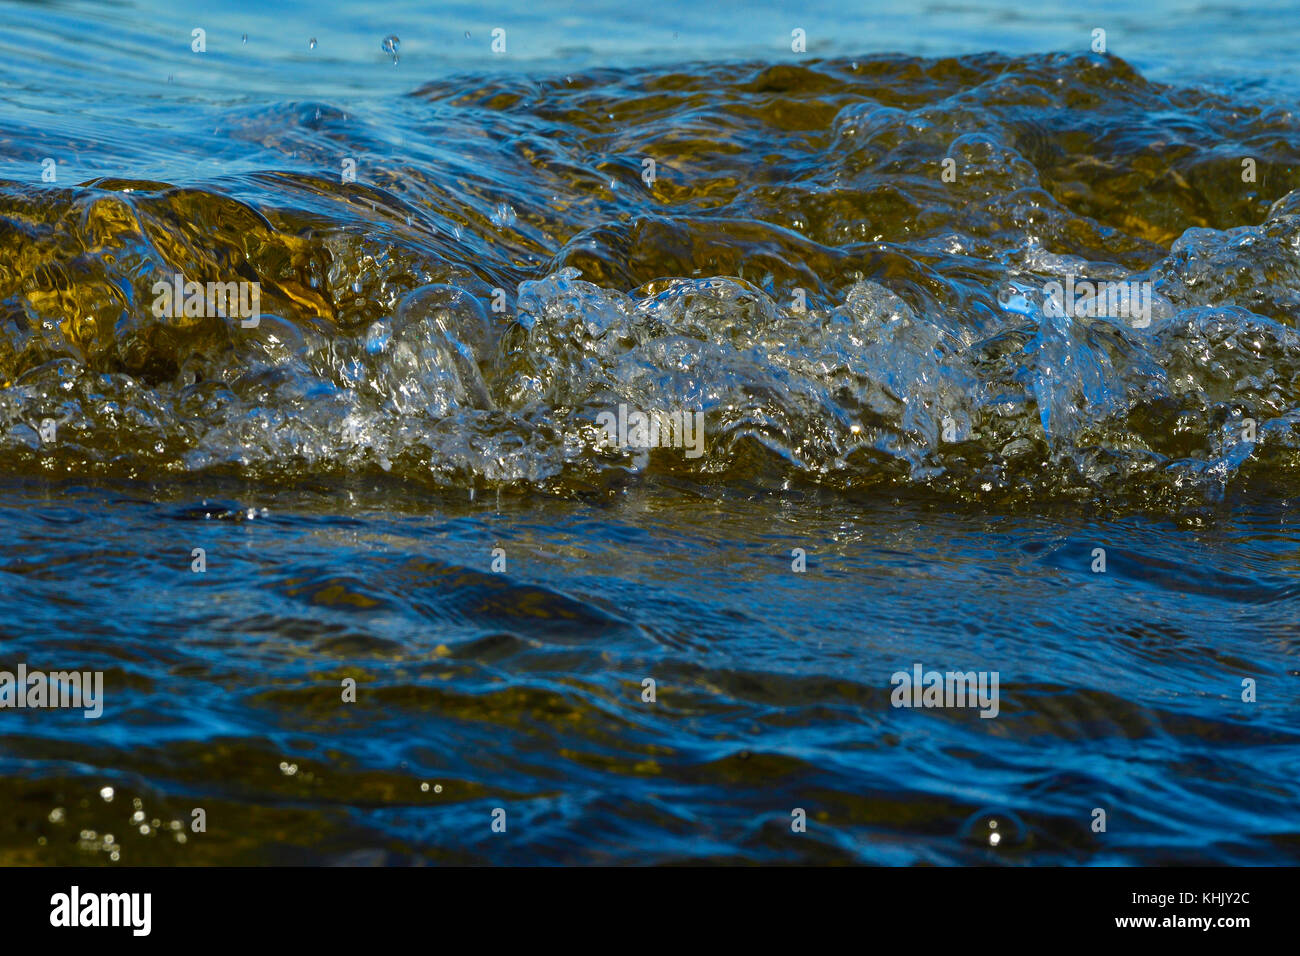 Un close up image de certains, les vagues de l'océan en vagues côte la création d'quelques bulles sur l'île de Vancouver en Colombie-Britannique, Canada. Banque D'Images